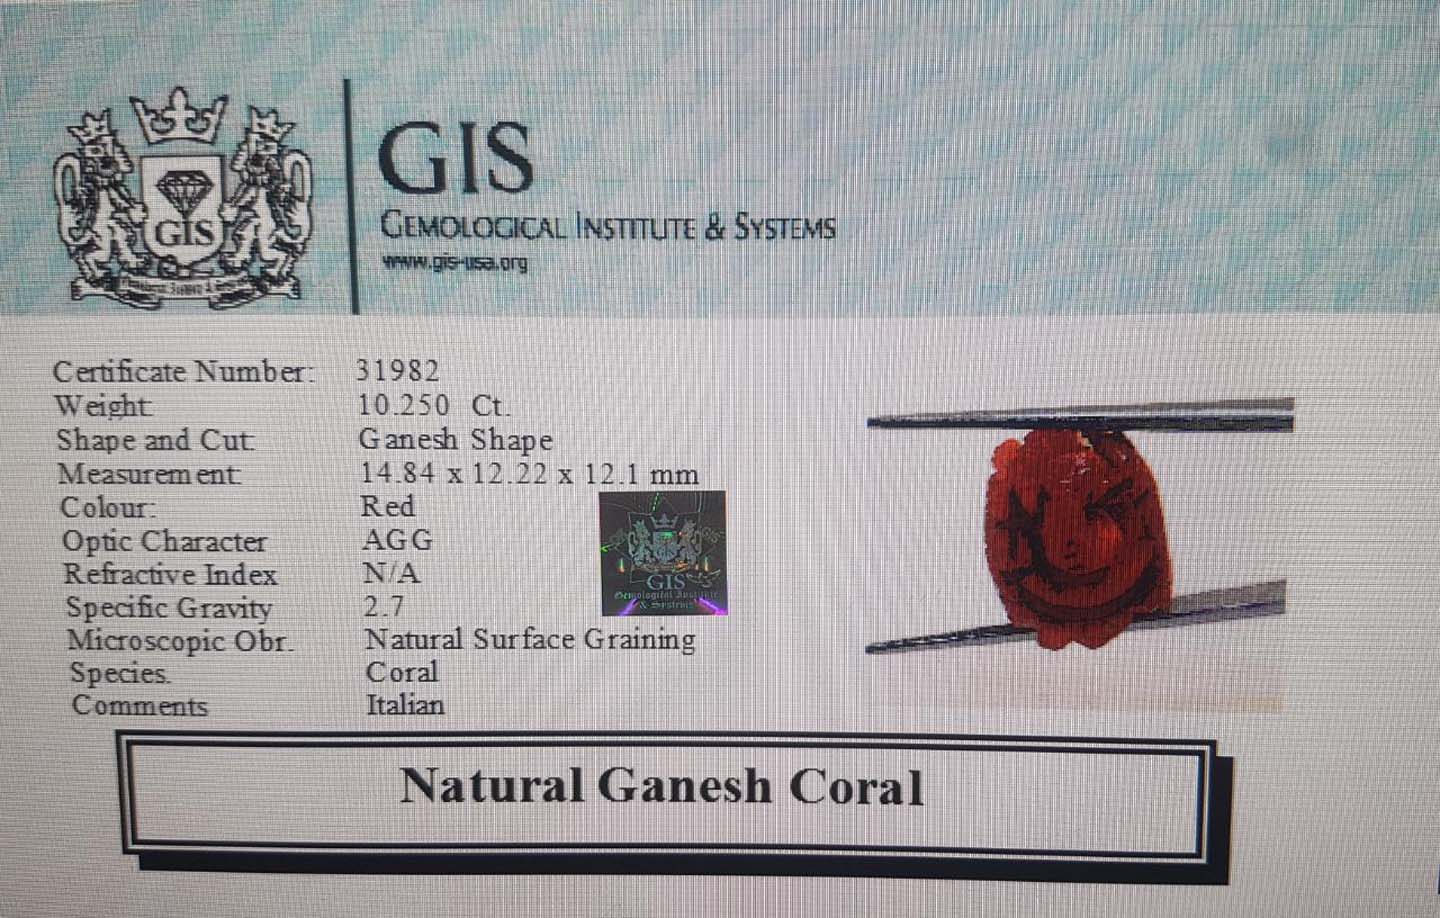 Ganesh Coral 10.25 Ct.